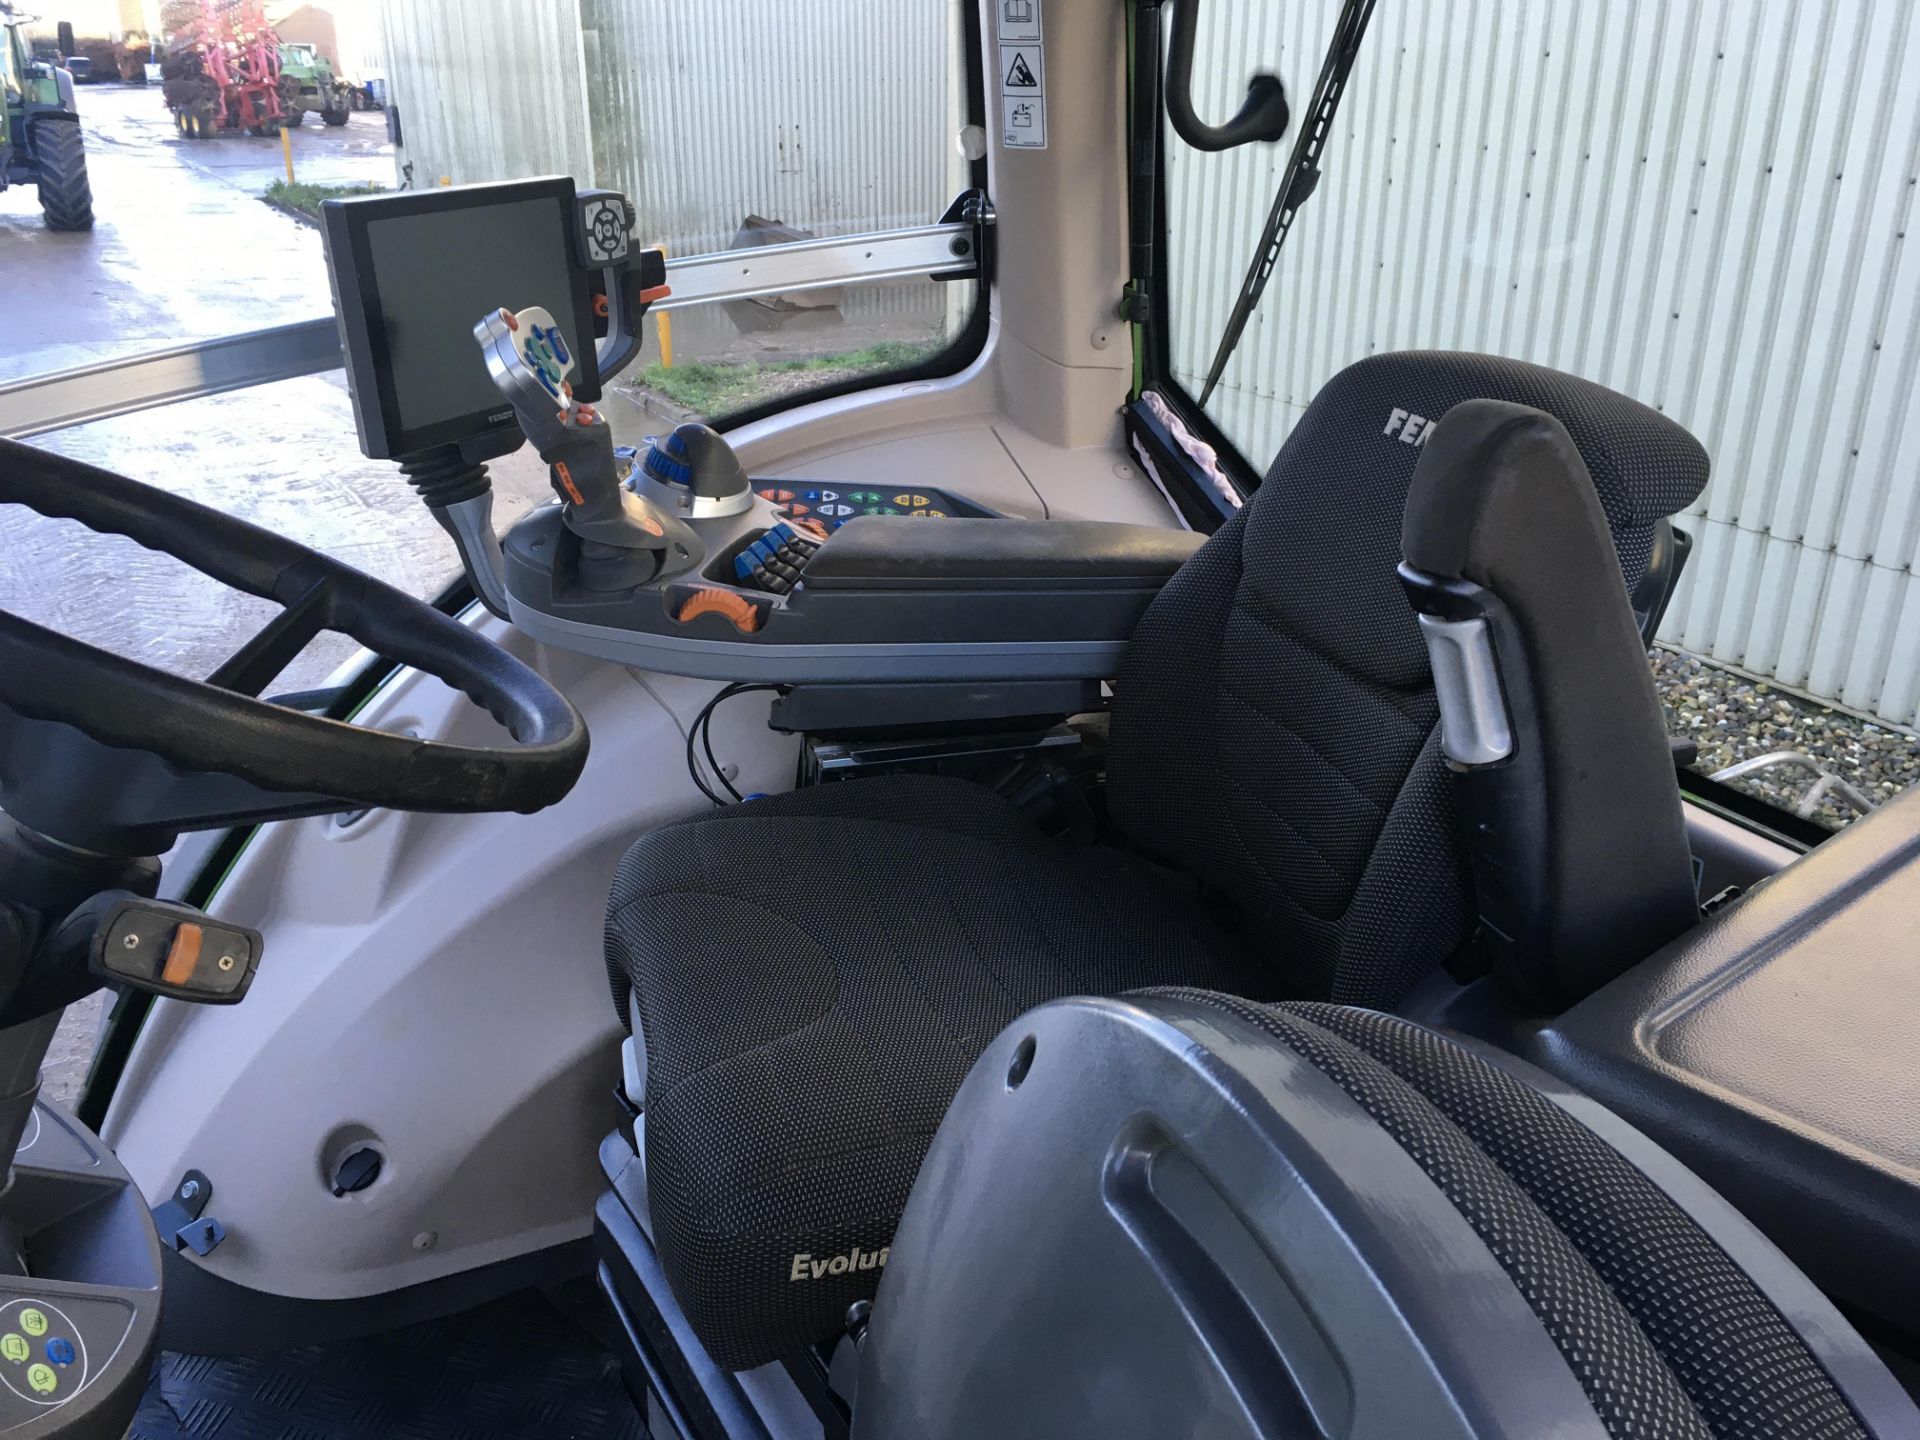 2018 Fendt 939 Vario ProfiPlus tractor - Image 10 of 12